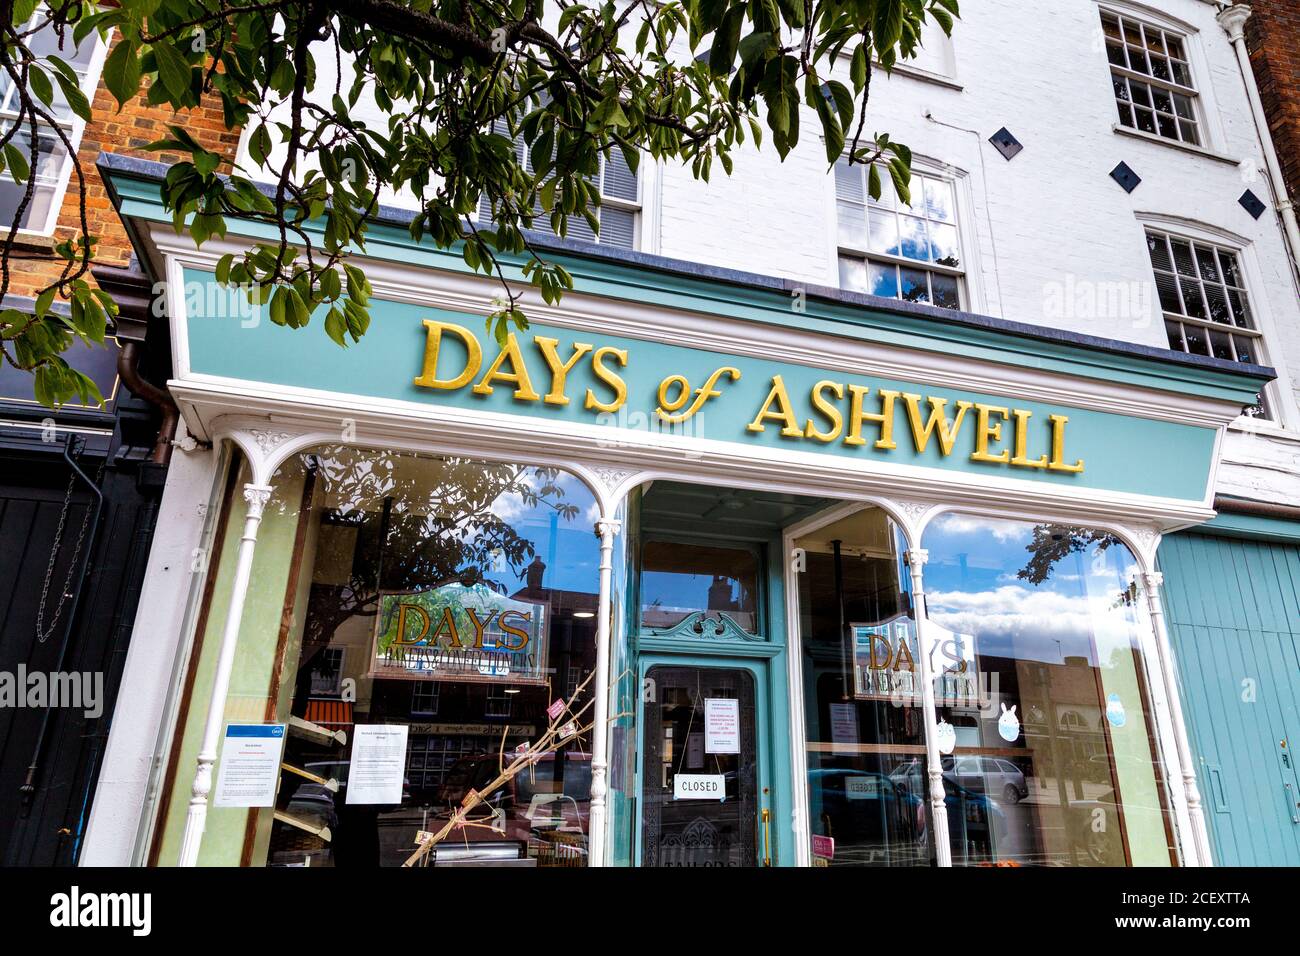 Tienda exterior frente a la panadería Days of Ashwell, Baldock, Reino Unido Foto de stock